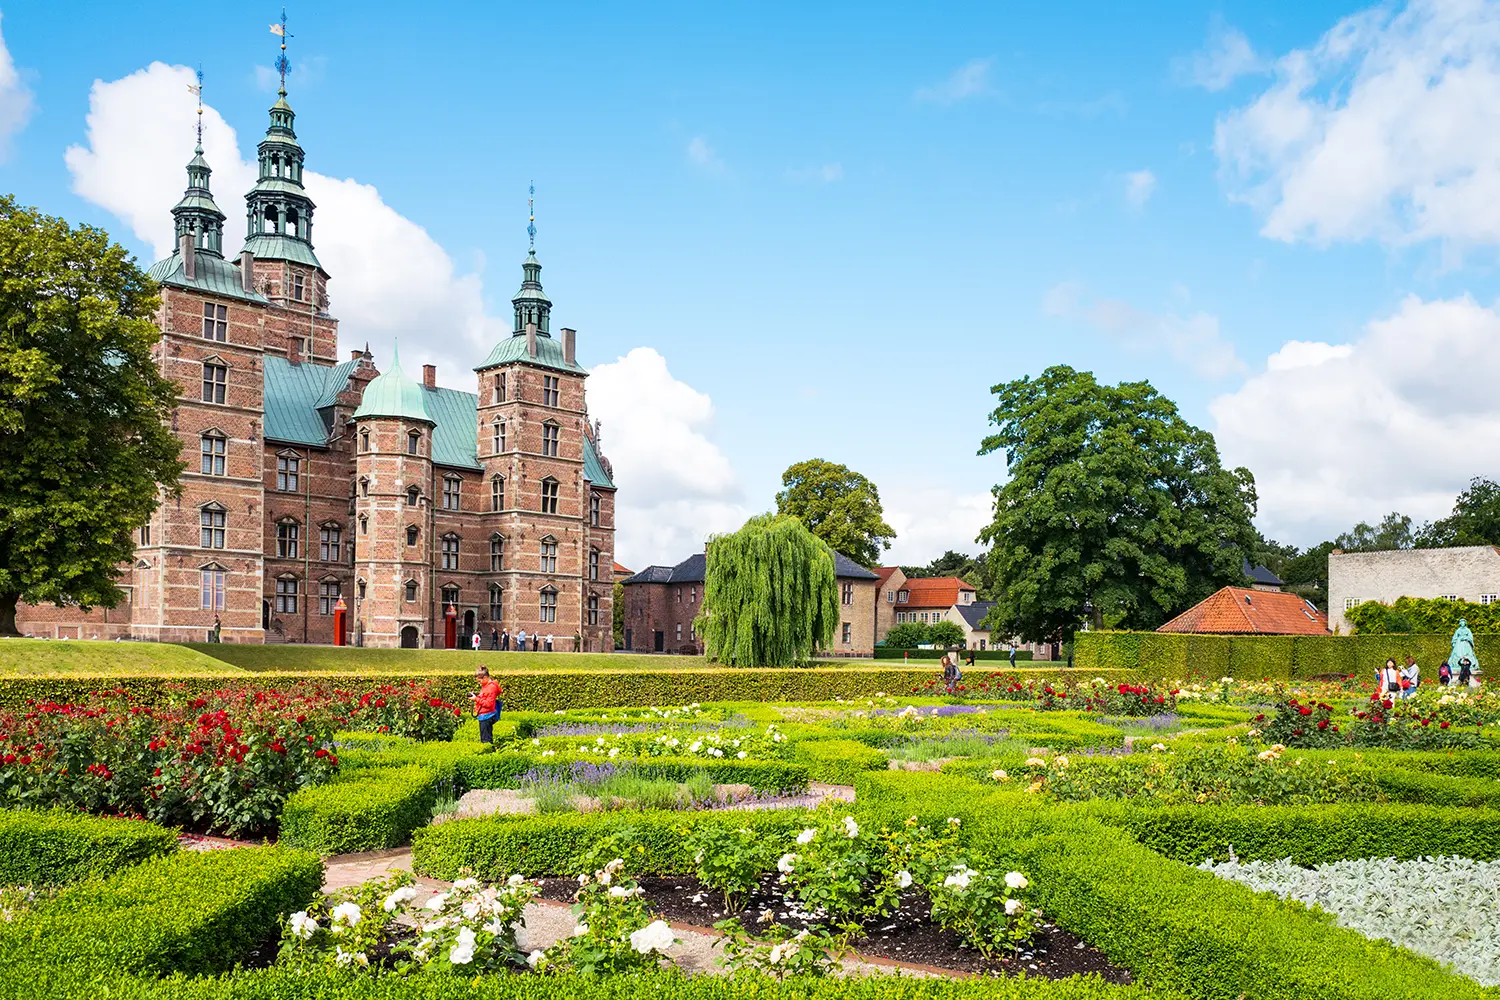 The Rosenborg castle seen from the King's garden in Copenhagen, Denmark